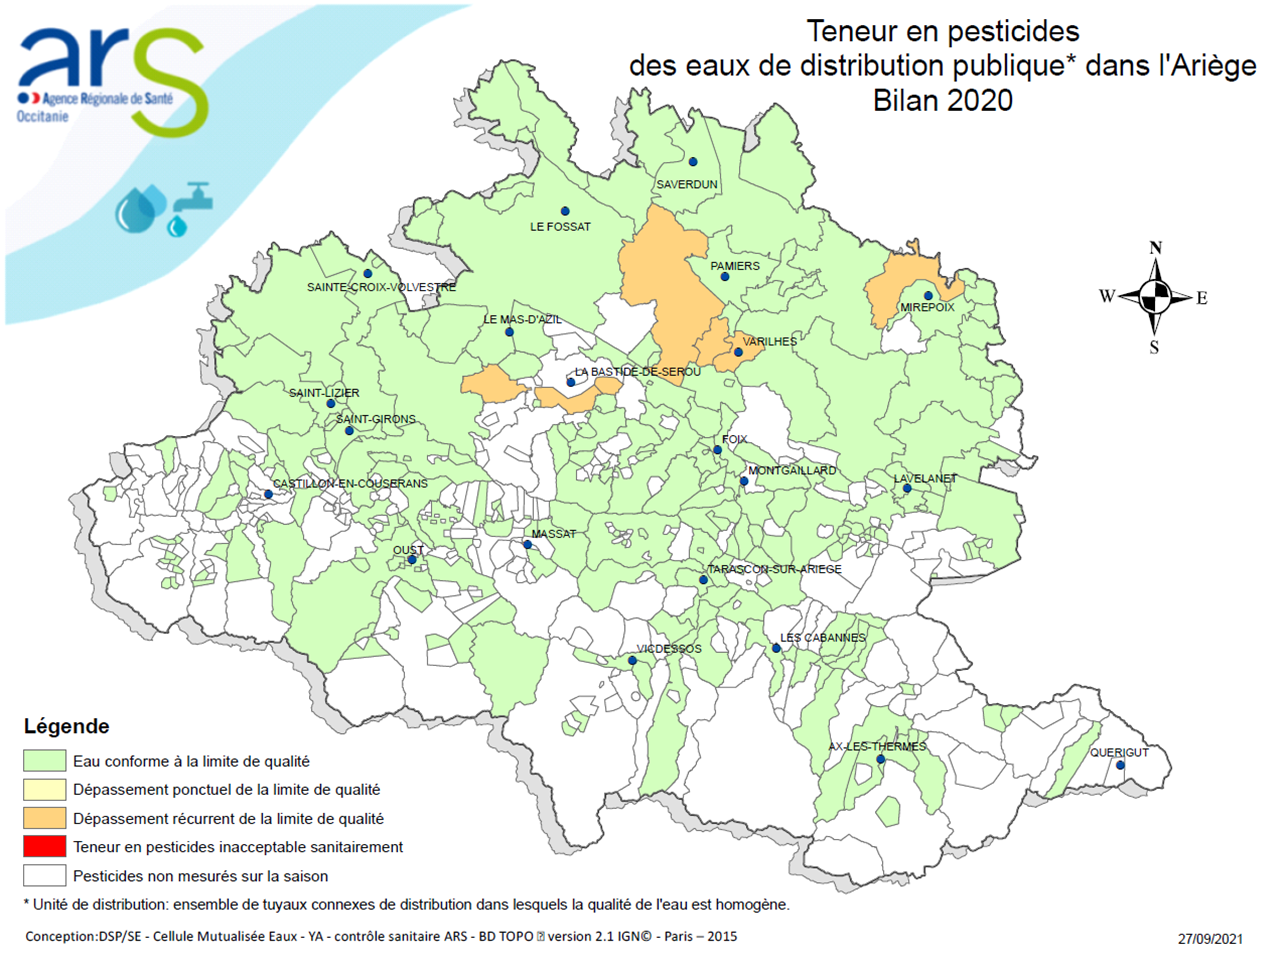 Pesticides Ariège (Bialn eau 2020)